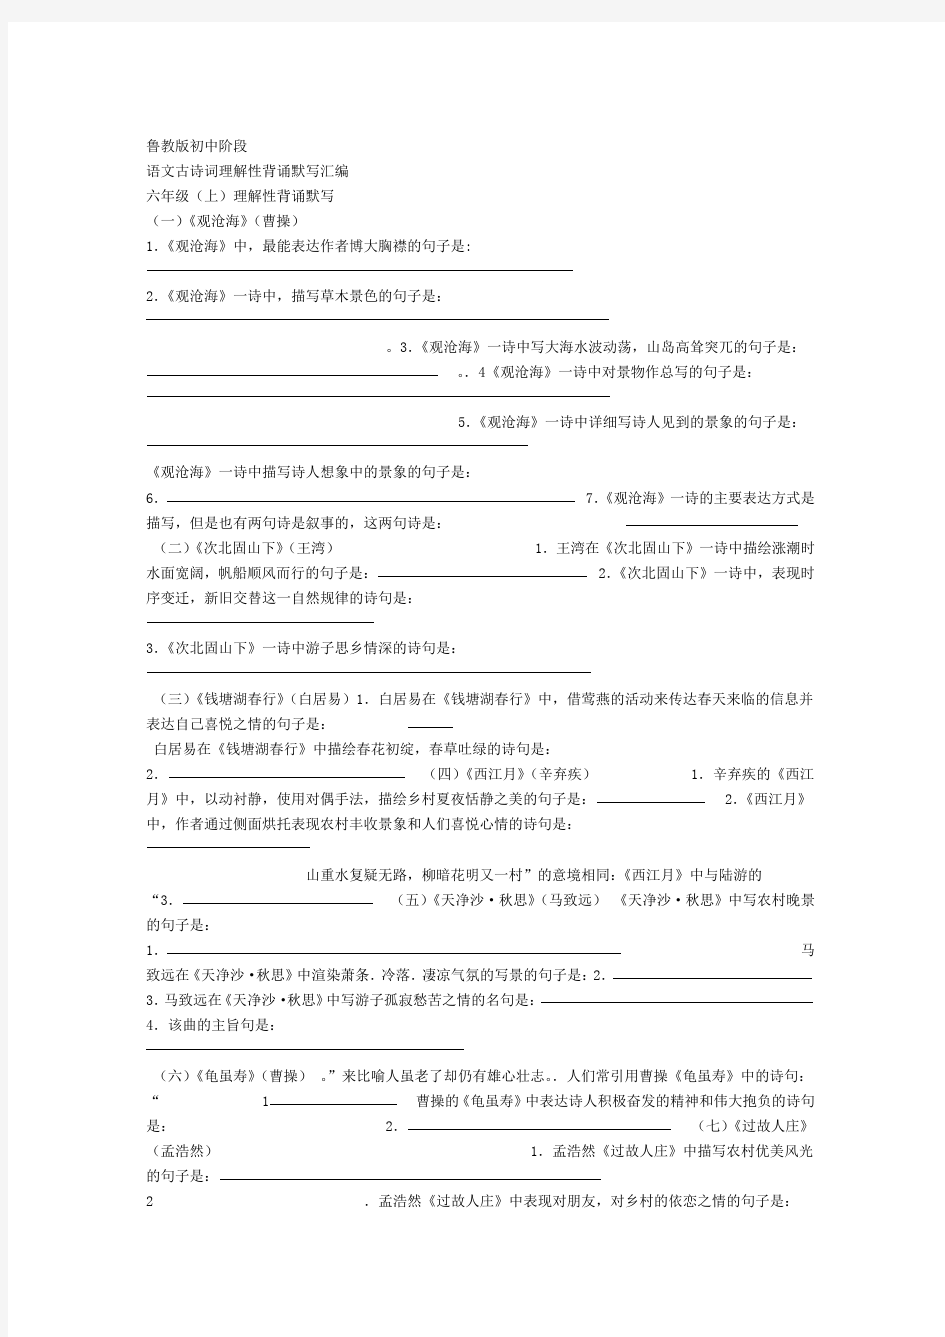 鲁教版中考复习初中语文背诵古诗理解性默写练习